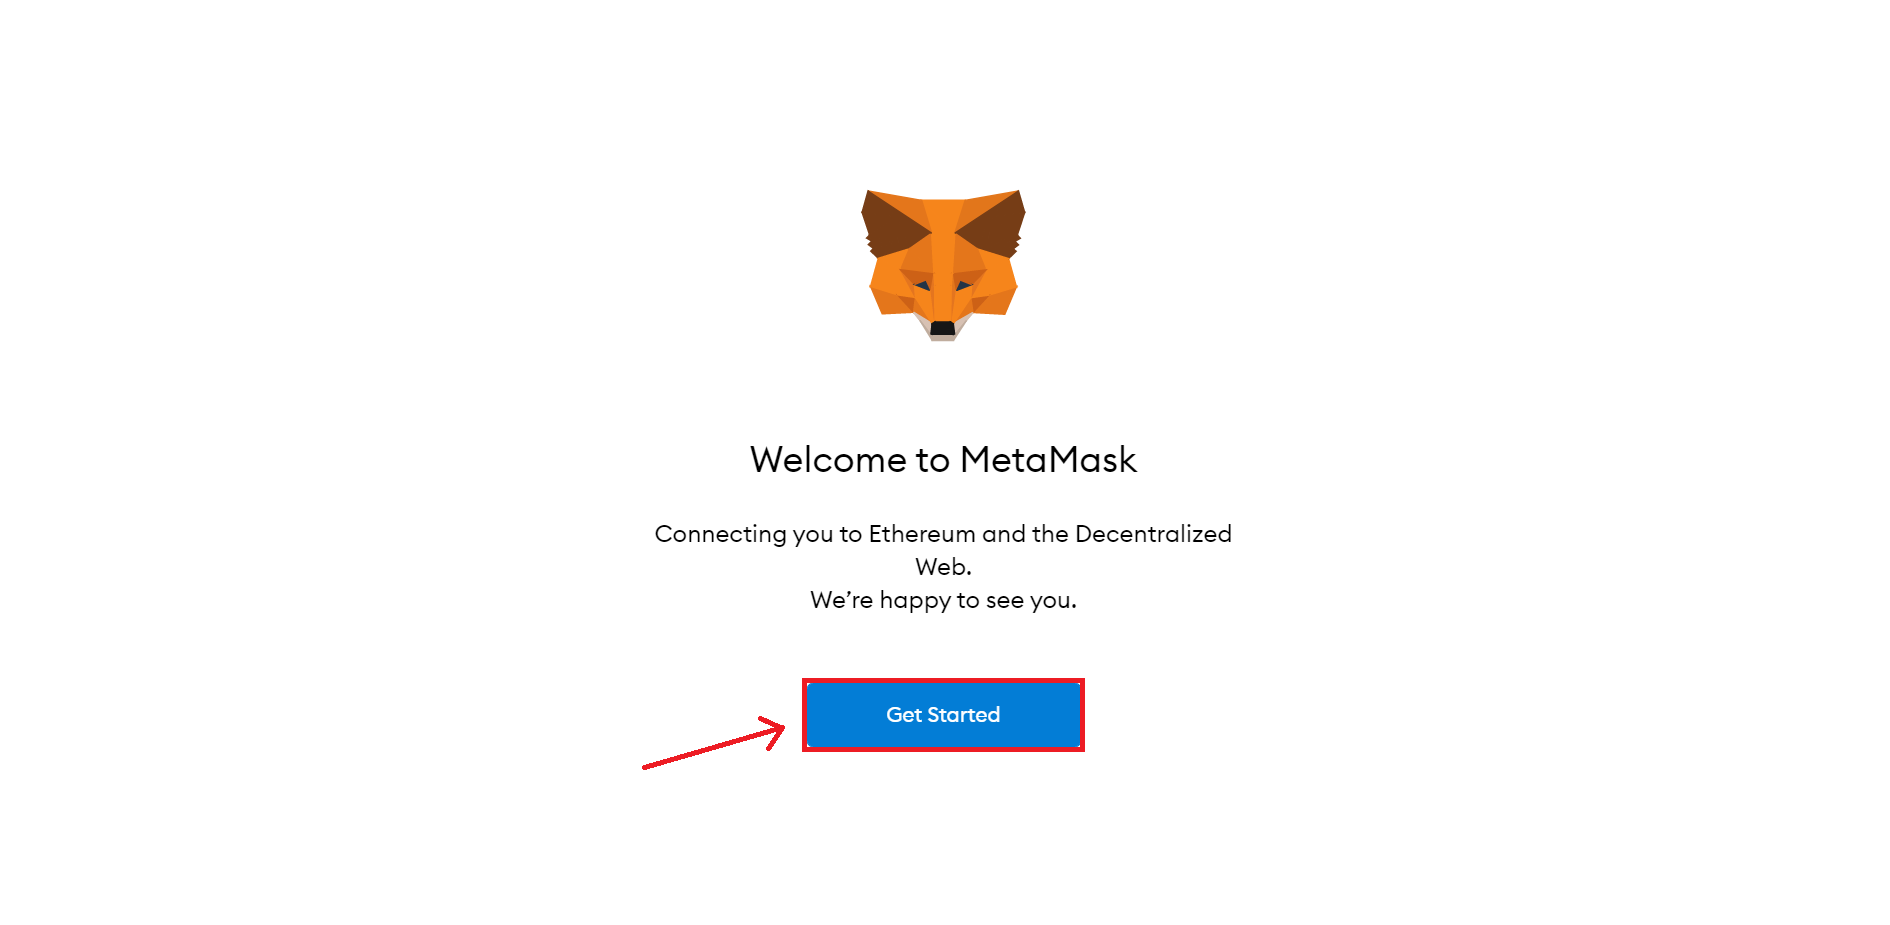 Ví Metamask là gì? Hướng dẫn chi tiết cách cài đặt, dùng và khôi phục ví